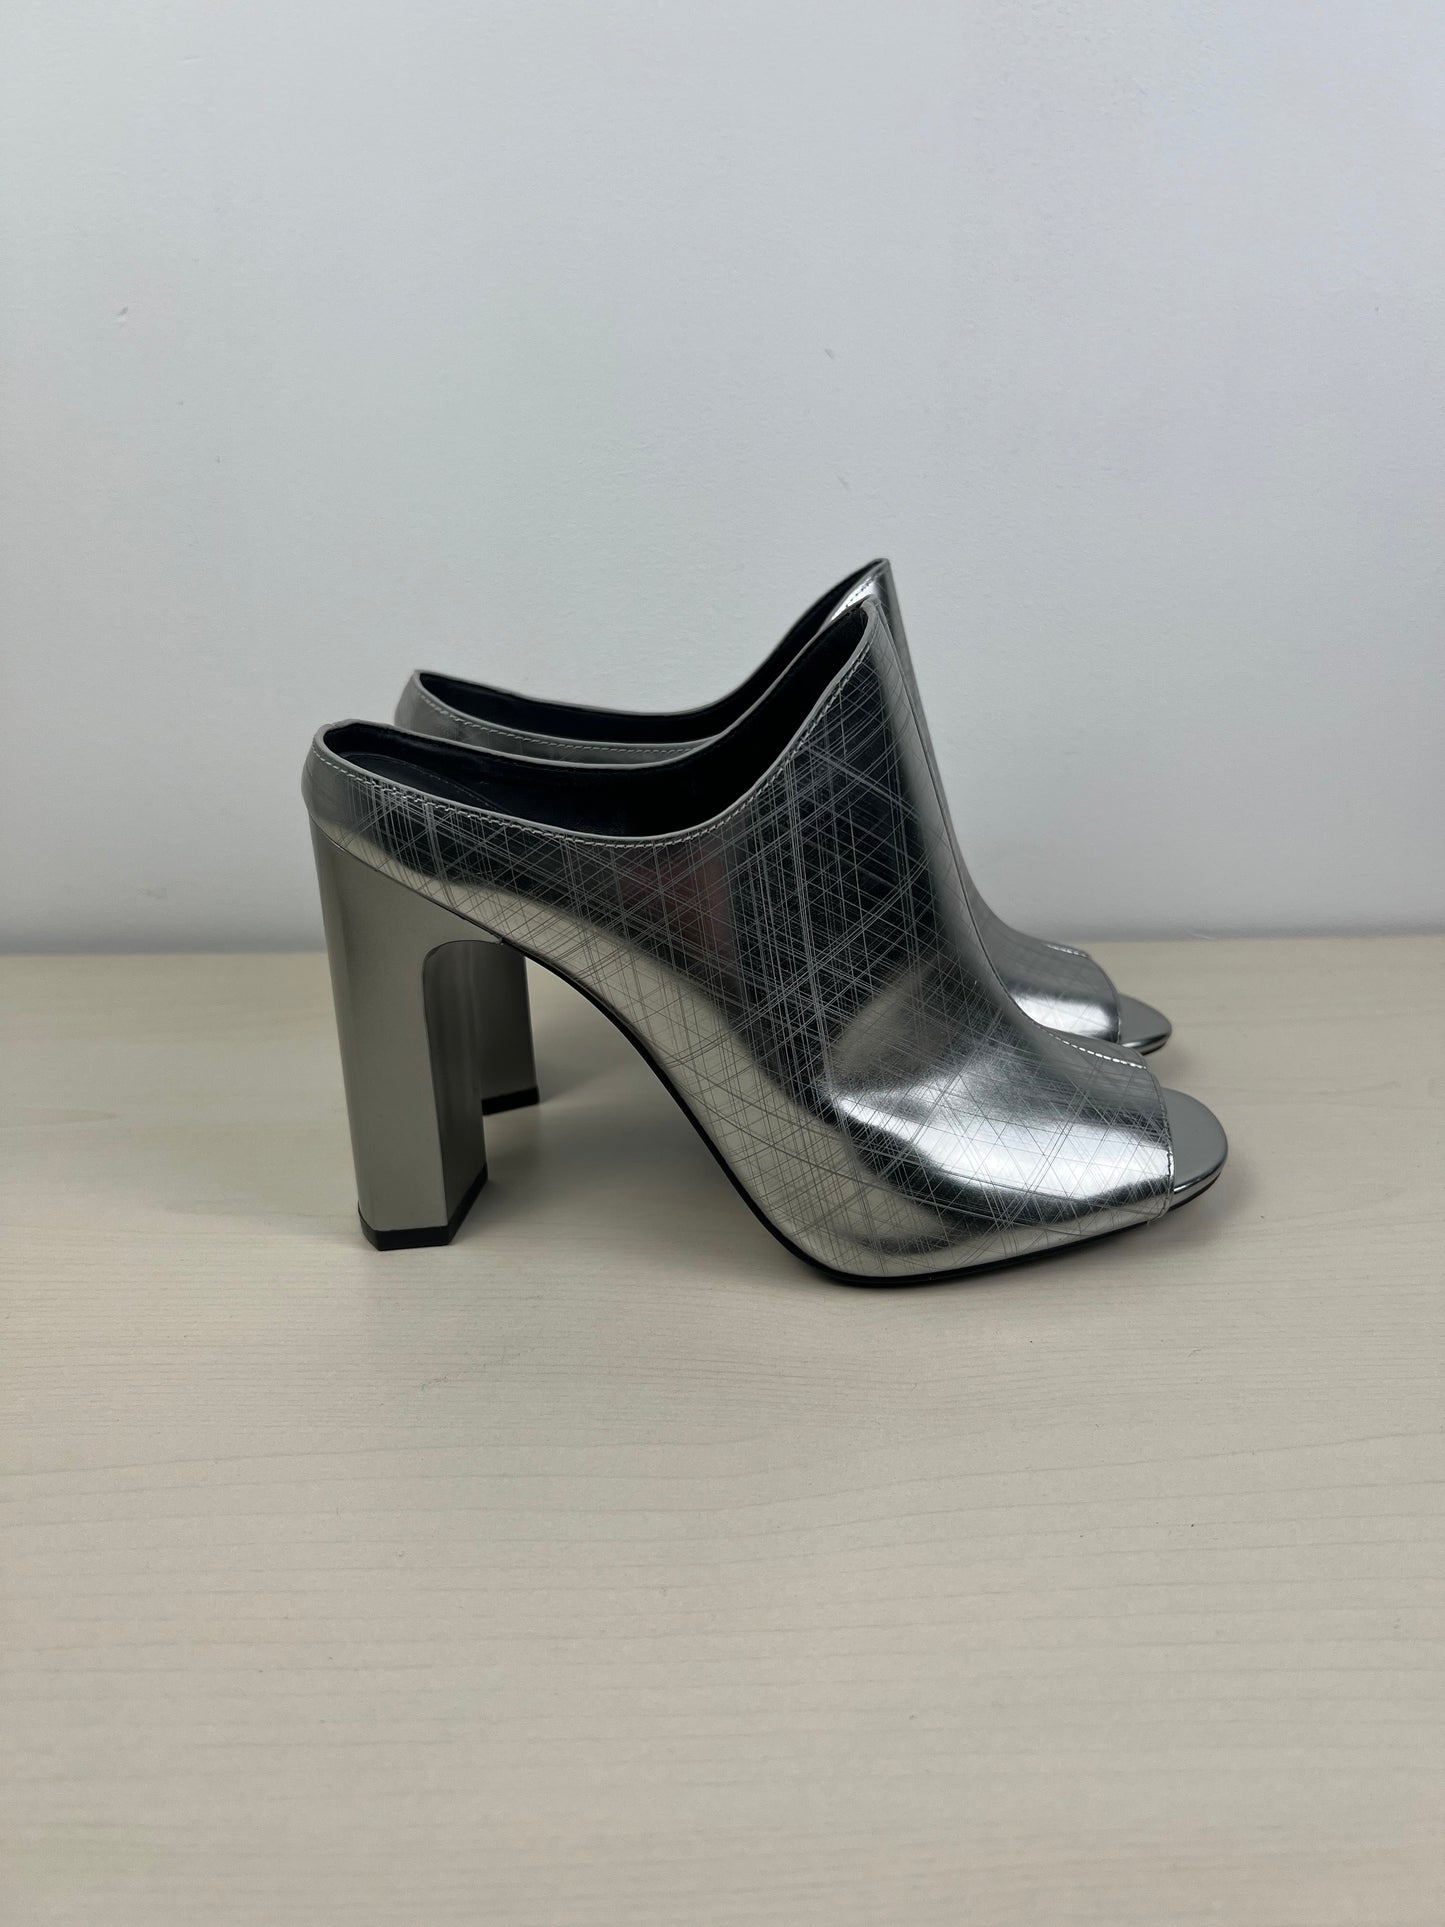 Sandals Heels Block By Calvin Klein  Size: 8.5